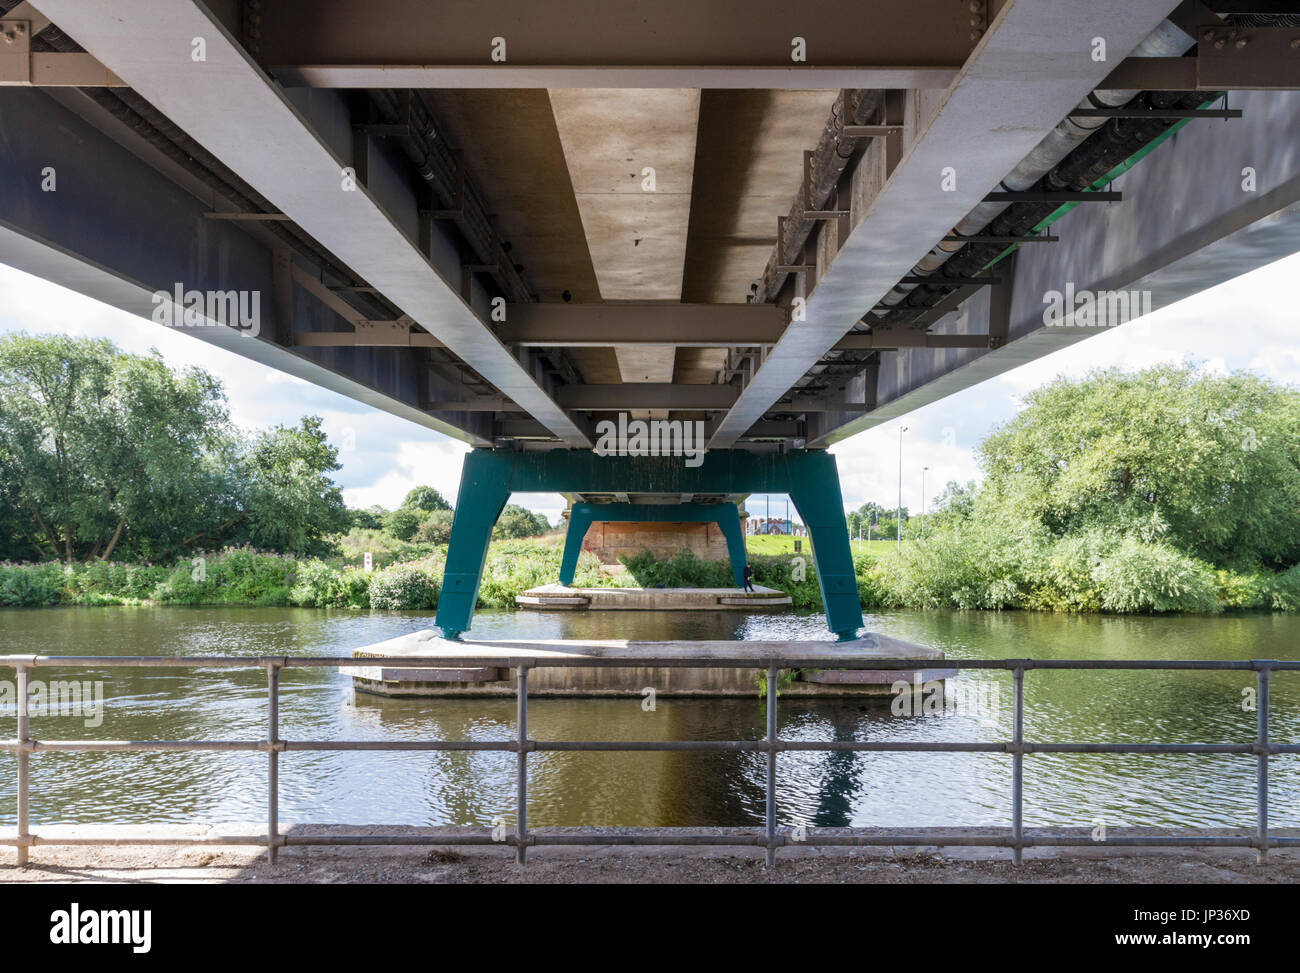 Debajo de un puente moderno utilizado para transportar la red tranvía sobre el río Trent, Nottingham, Inglaterra, Reino Unido. Foto de stock